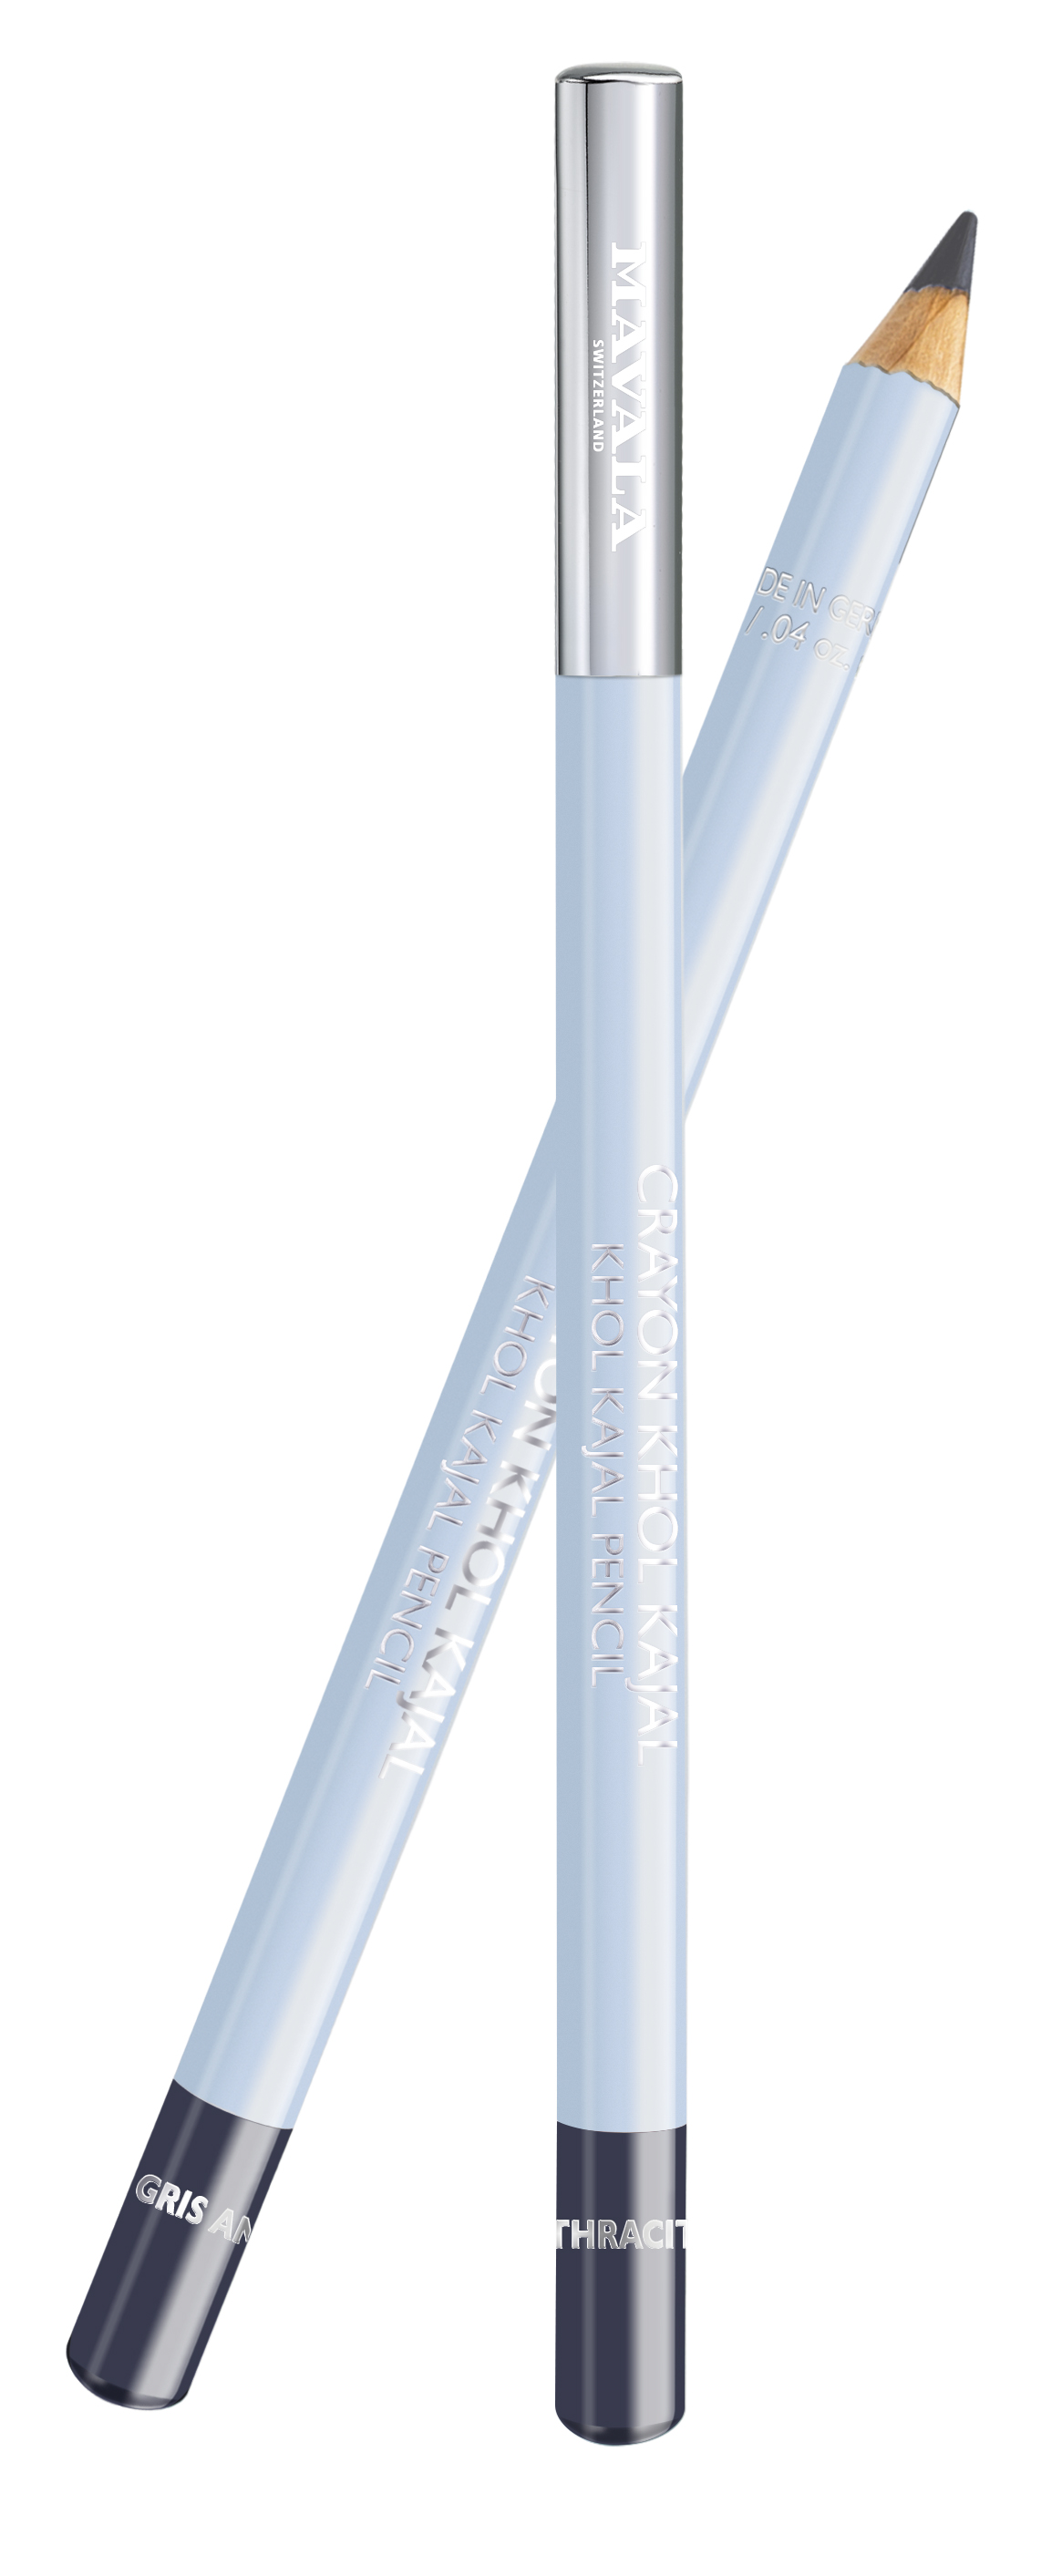 935.06 KHÔL KAJAL - Stift - Gris Anthracite (dunkelgrau) - Augenkontur-Stift für einen strahlend schönen Blick - Vegan